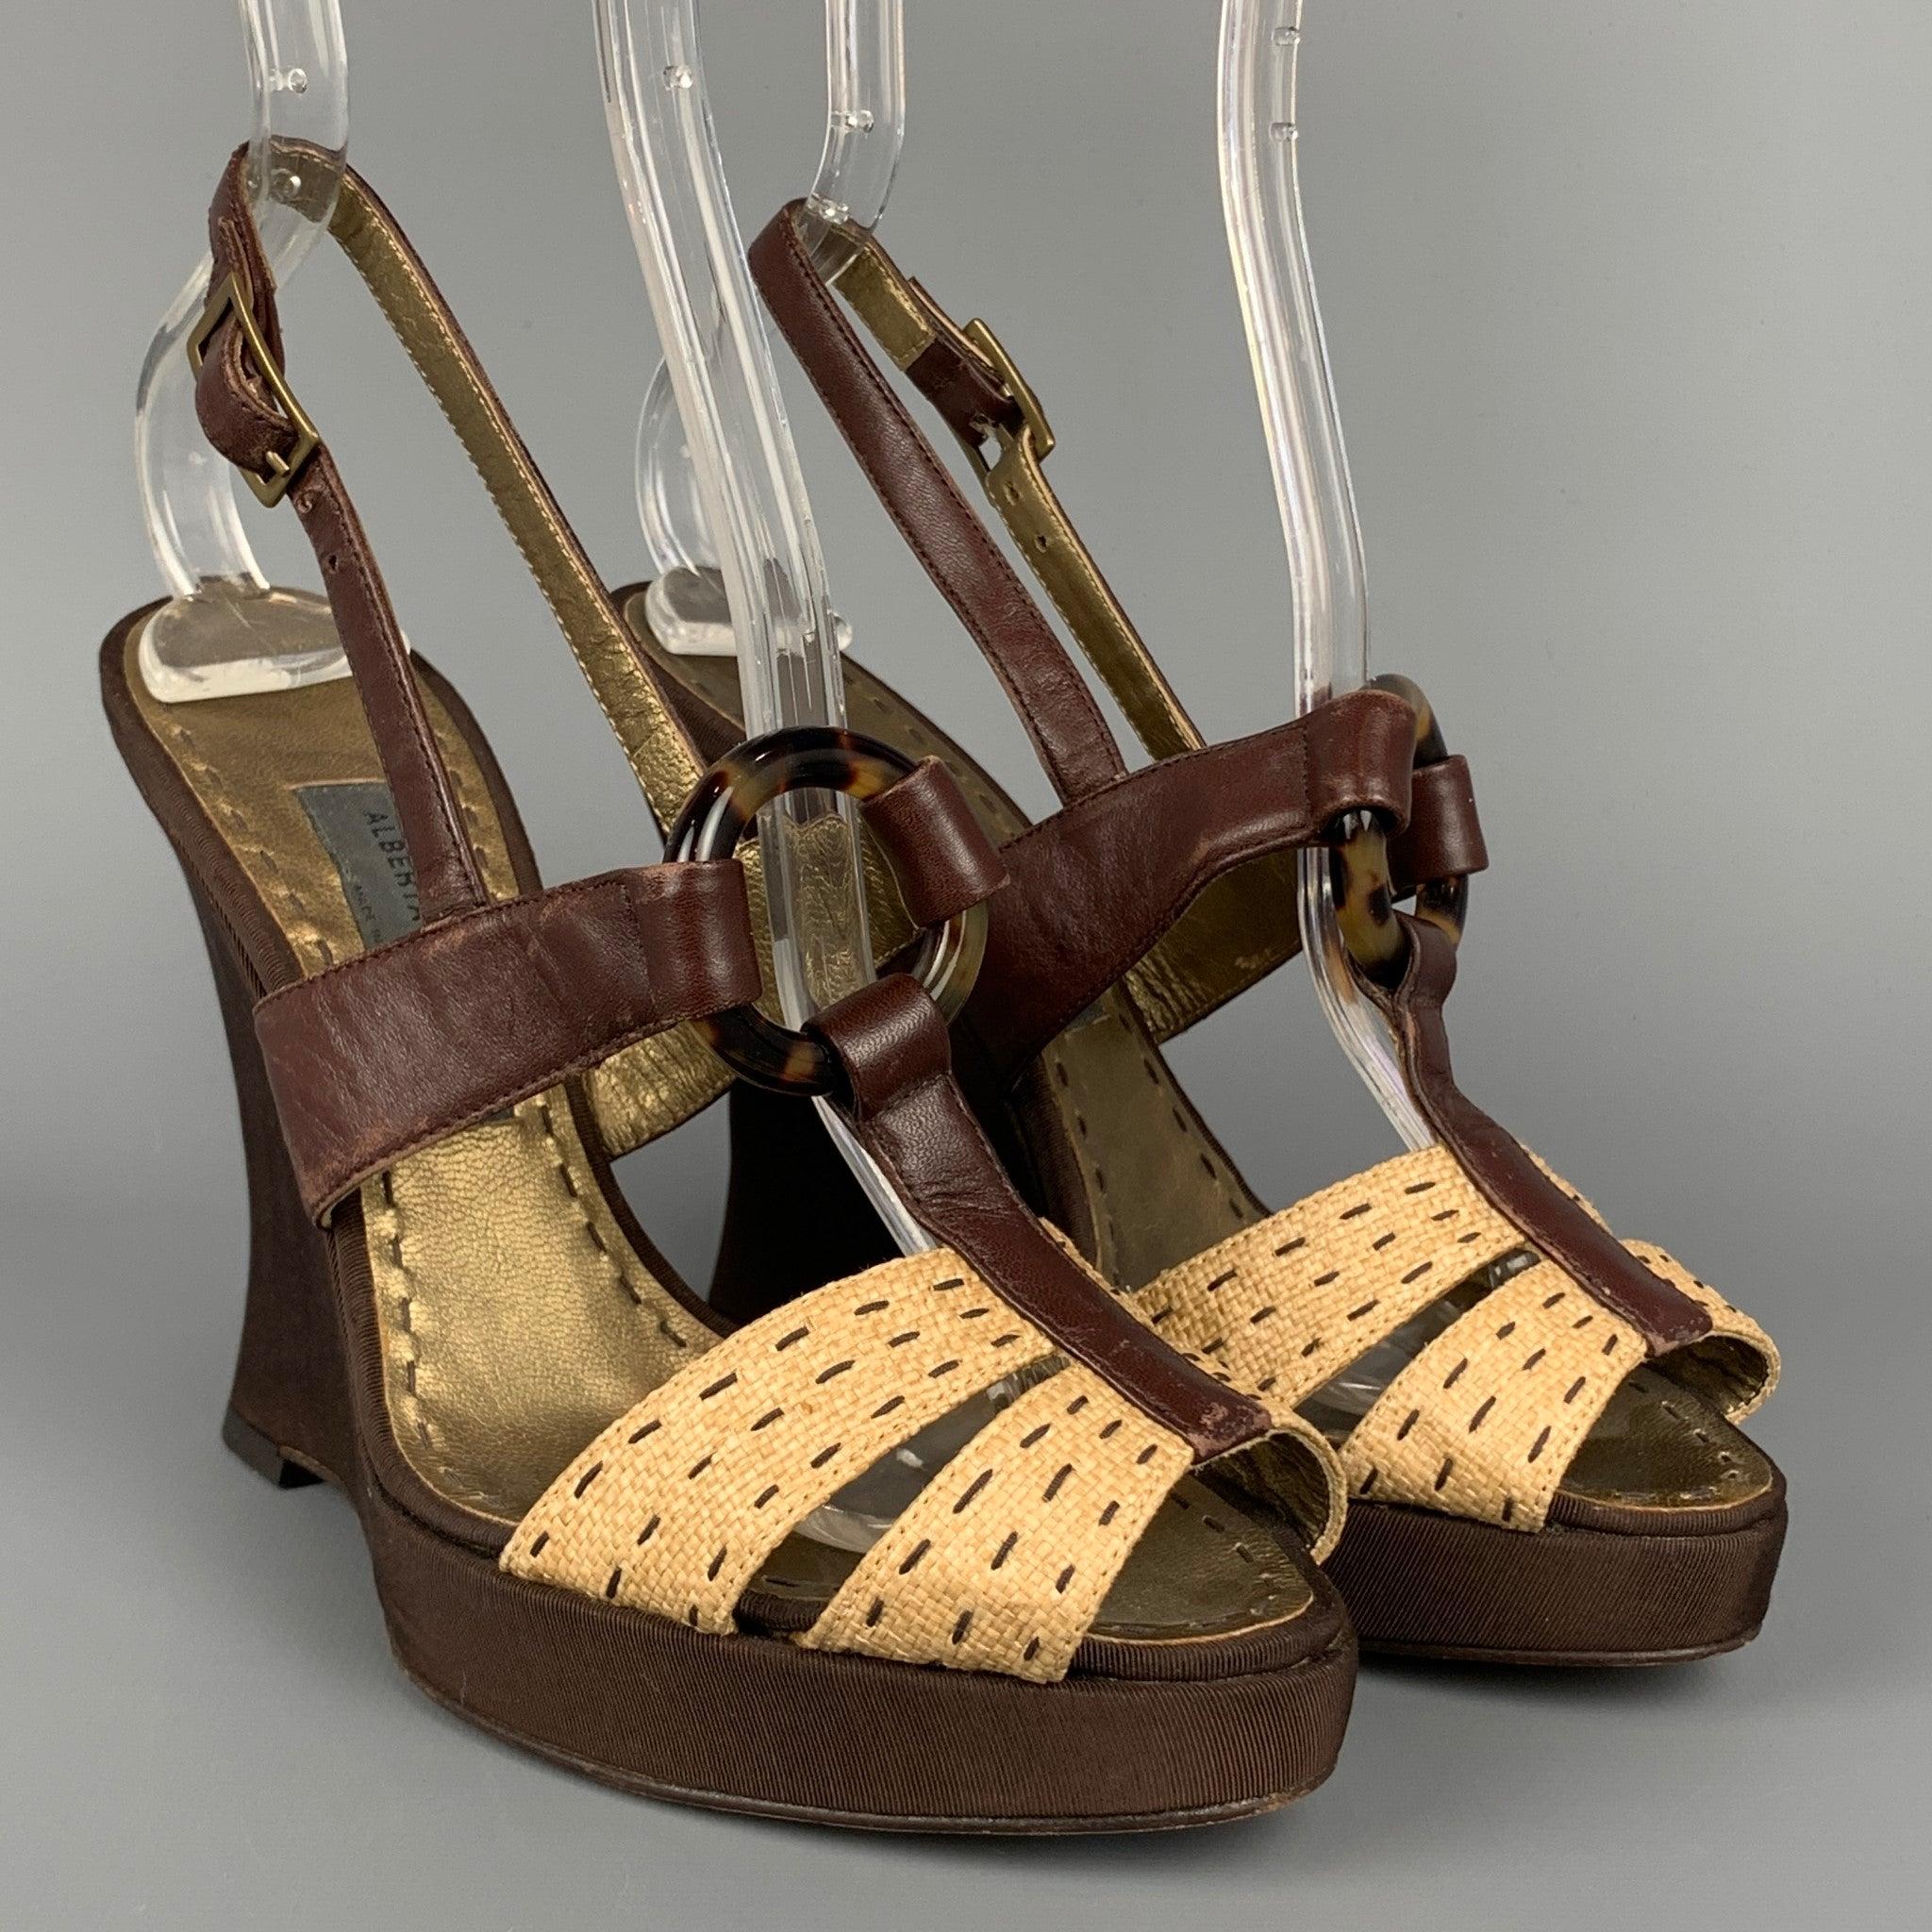 Les sandales ALBERTA FERRETTI sont réalisées en cuir marron et beige avec une bordure en soie et présentent un anneau en écaille, une bride cheville et un talon compensé. Fabriqué en Italie.
Etat d'occasion. Marques mineures au niveau de la sangle. 